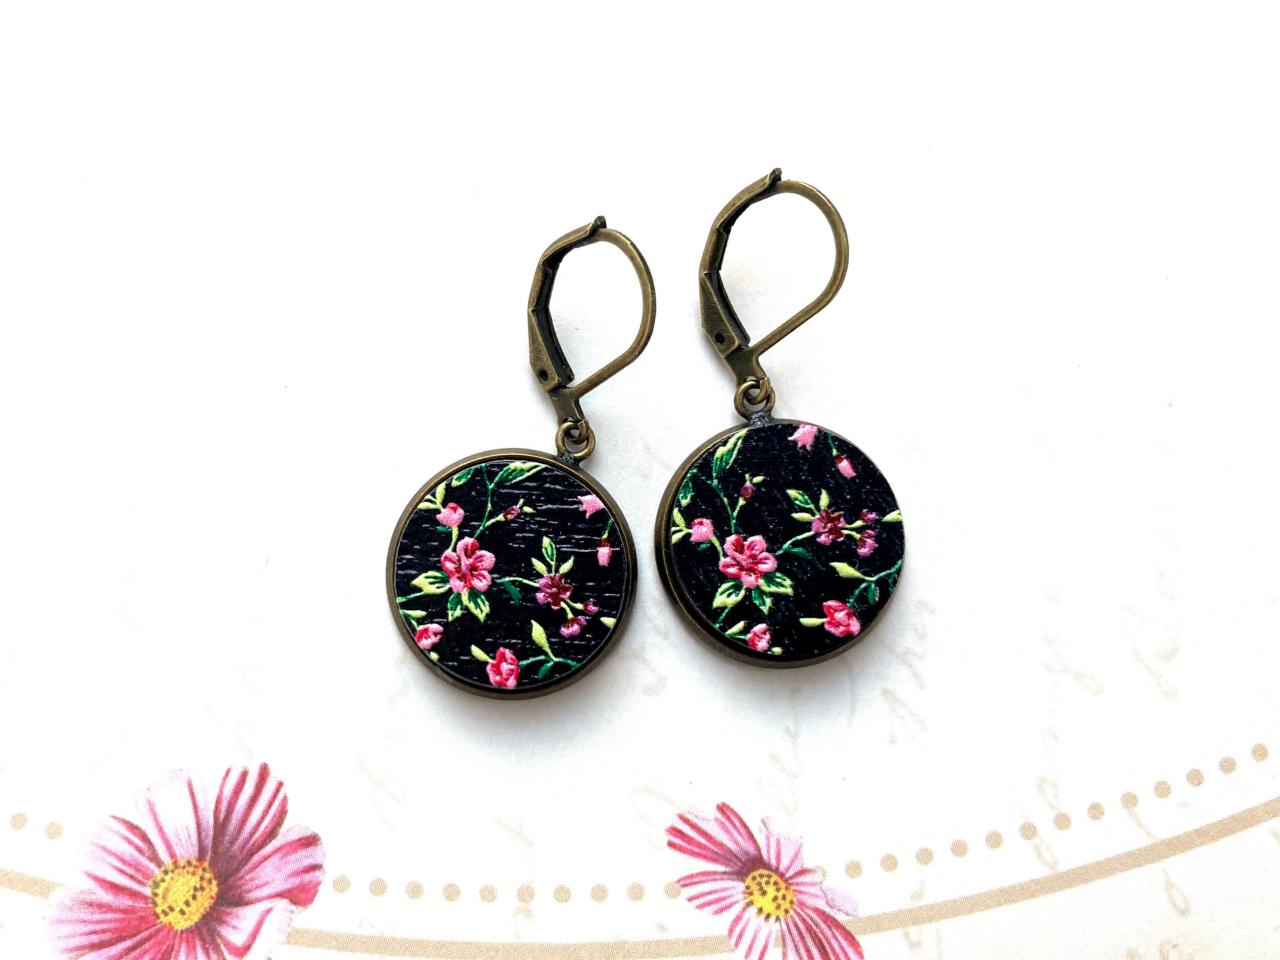 Beautiful Earrings With Black Flower Pendants, Embossed Wood And Brass, Selma Dreams